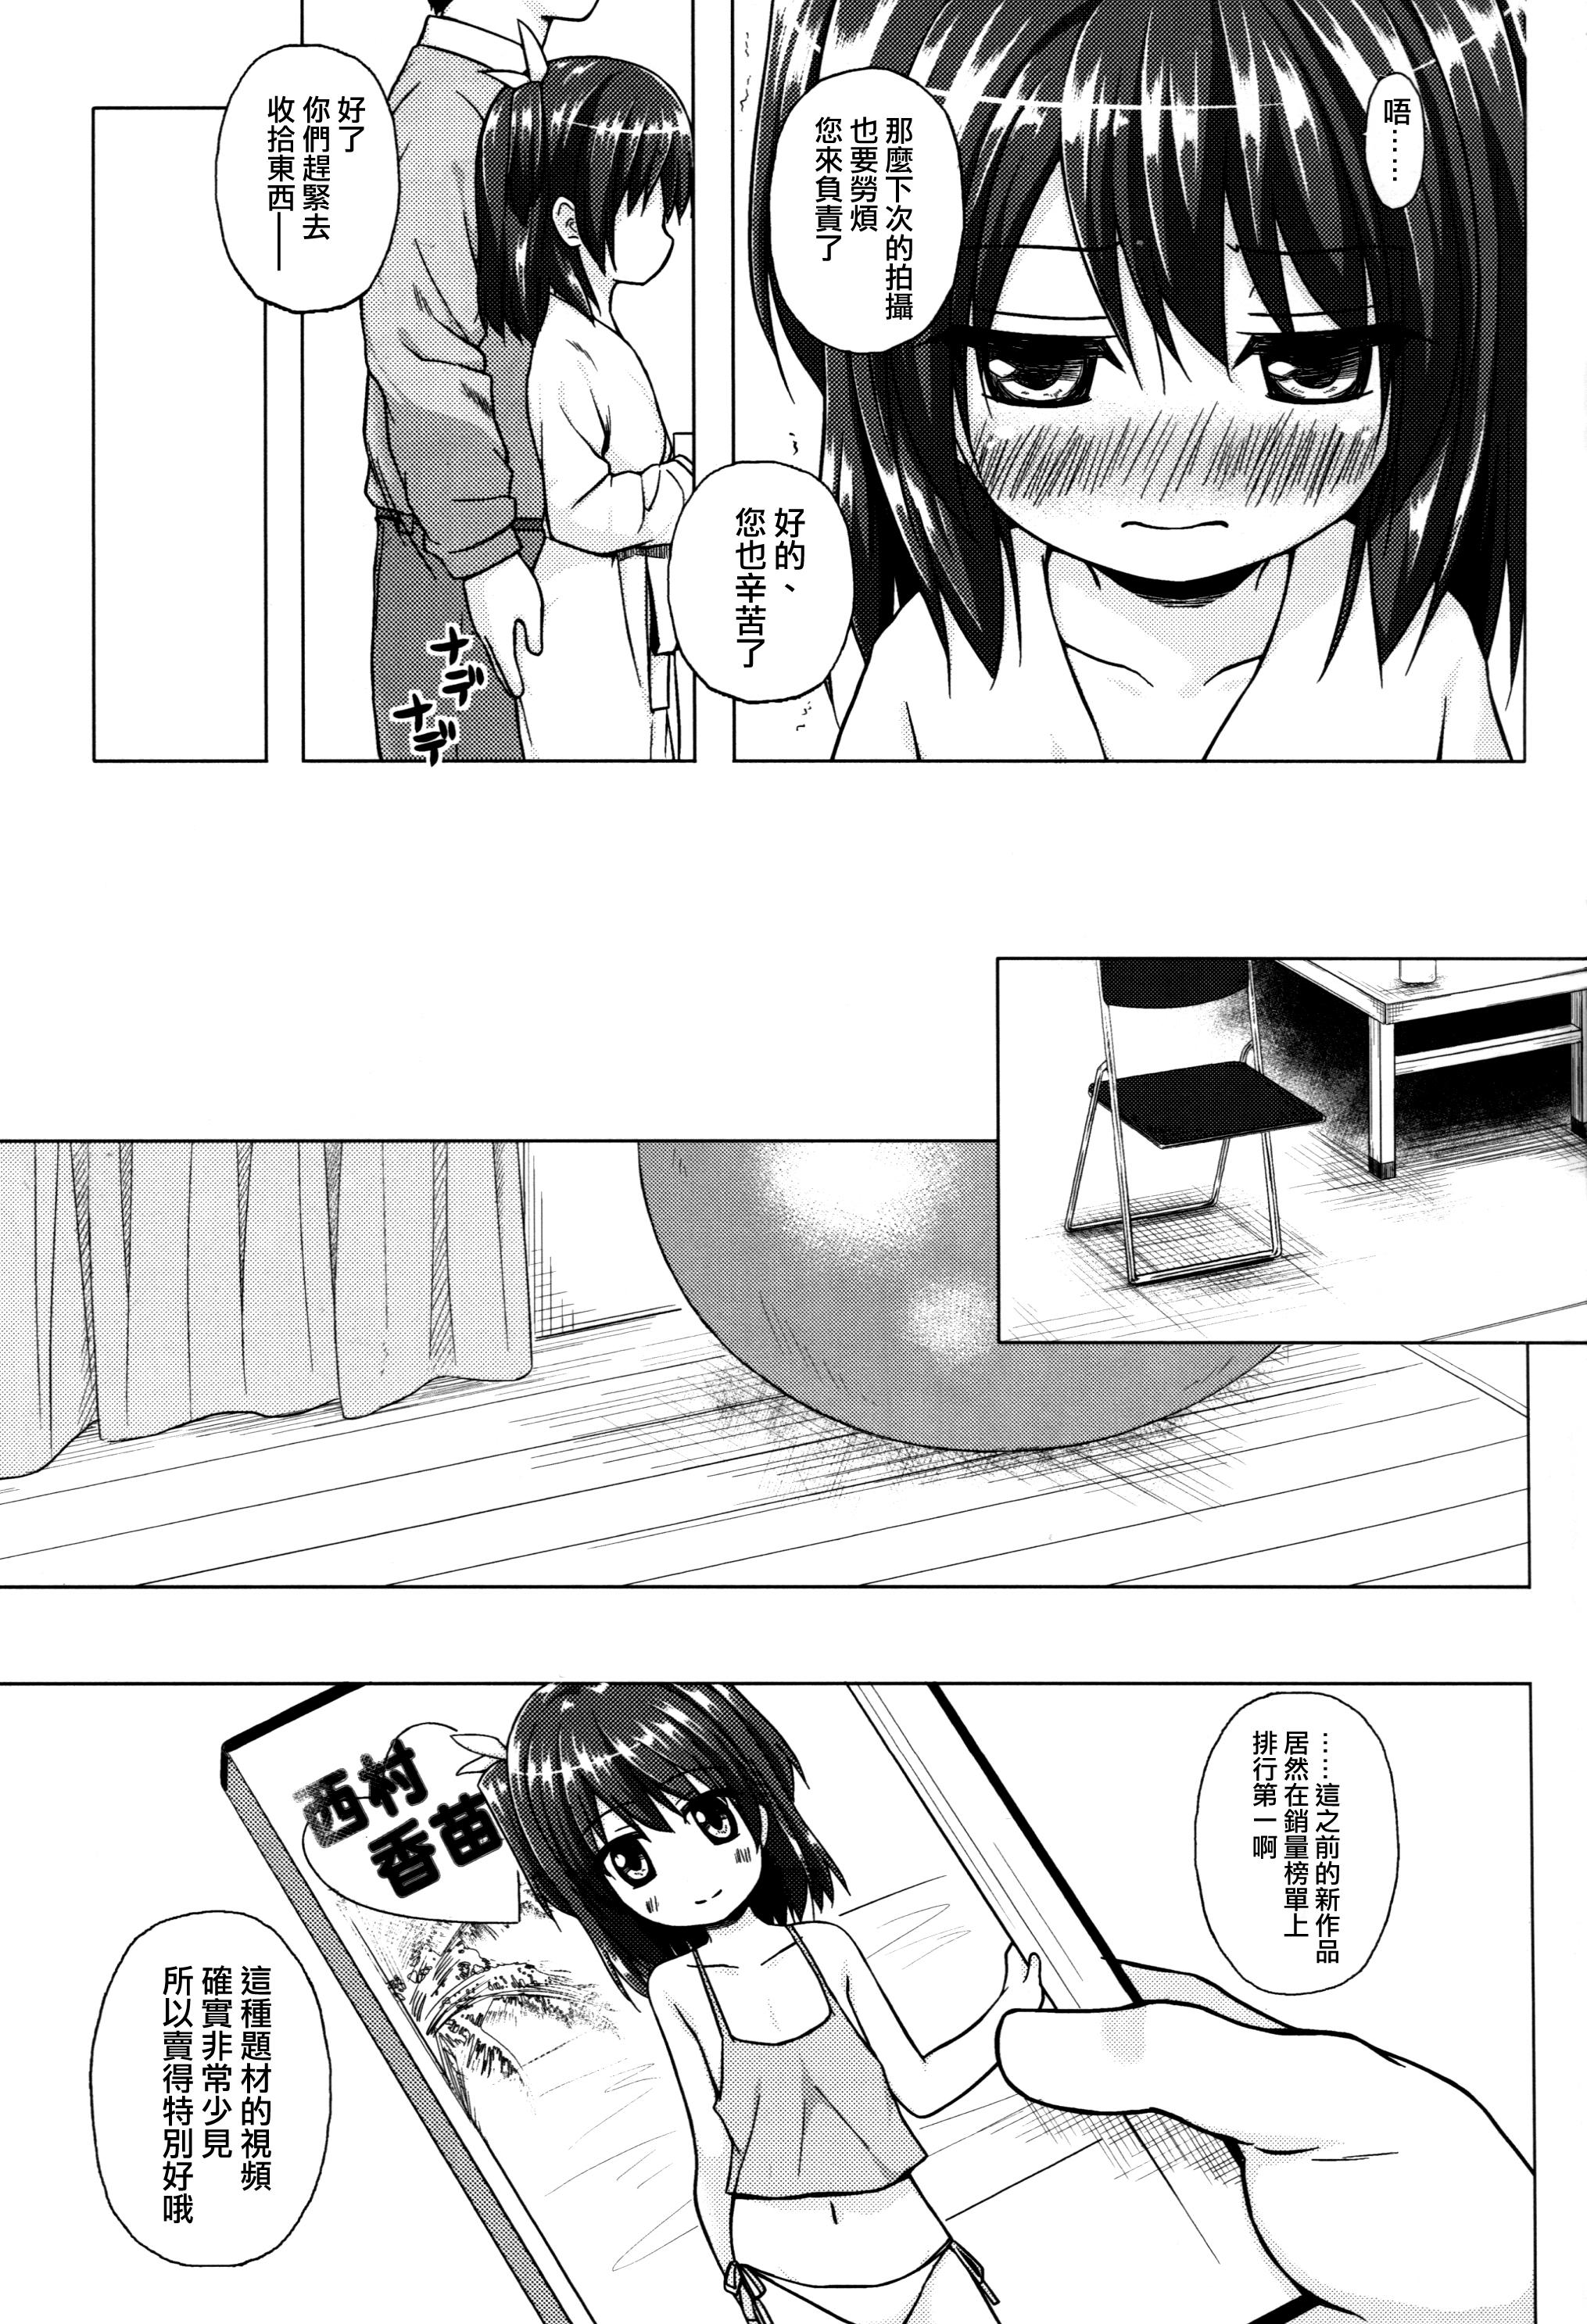 Slut Kanae-chan Smile! Blowjob Contest - Page 5